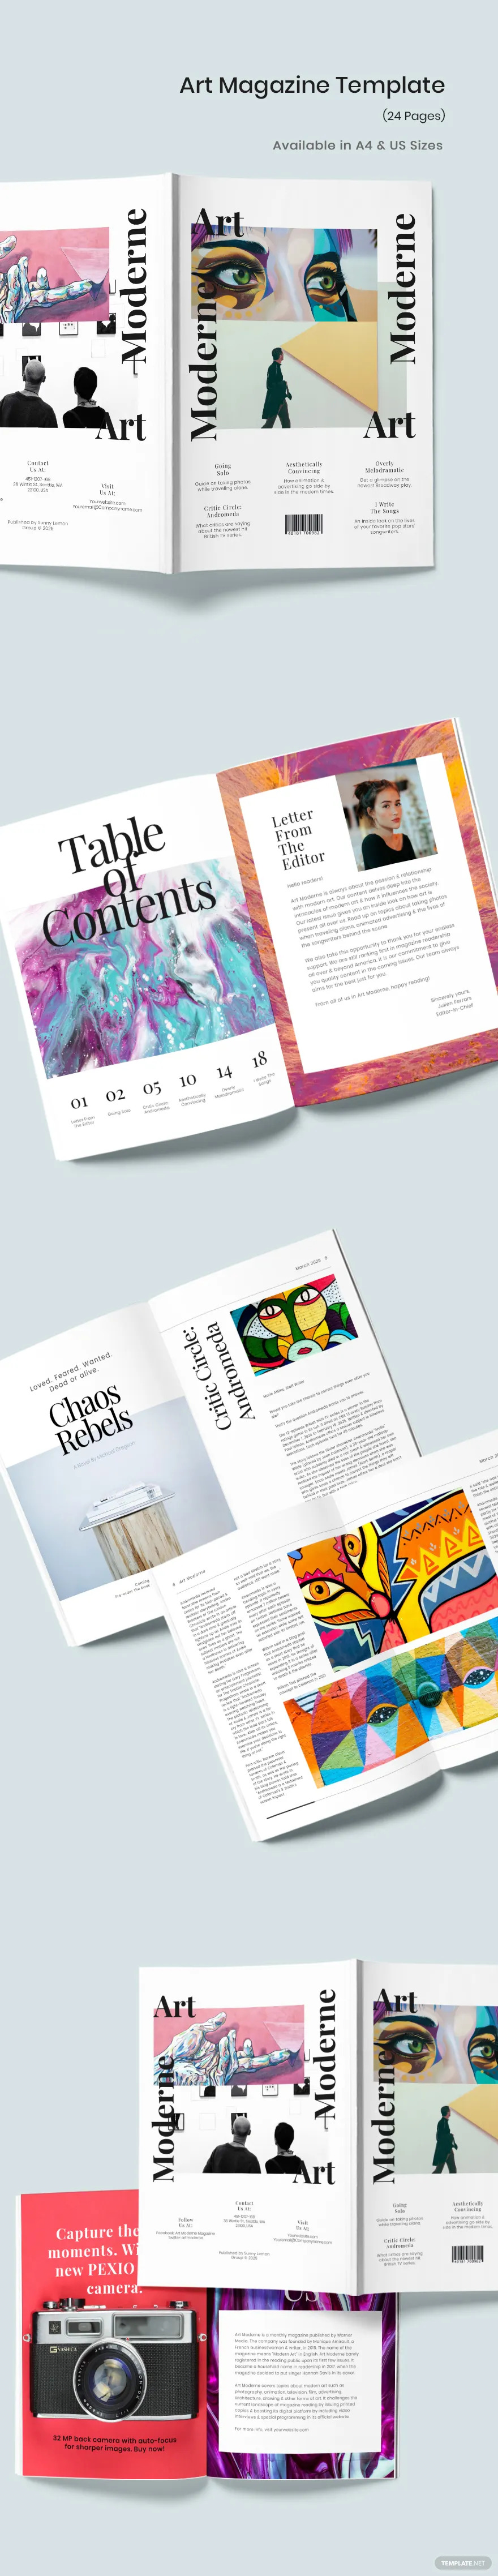 modern-art-magazine-template-1